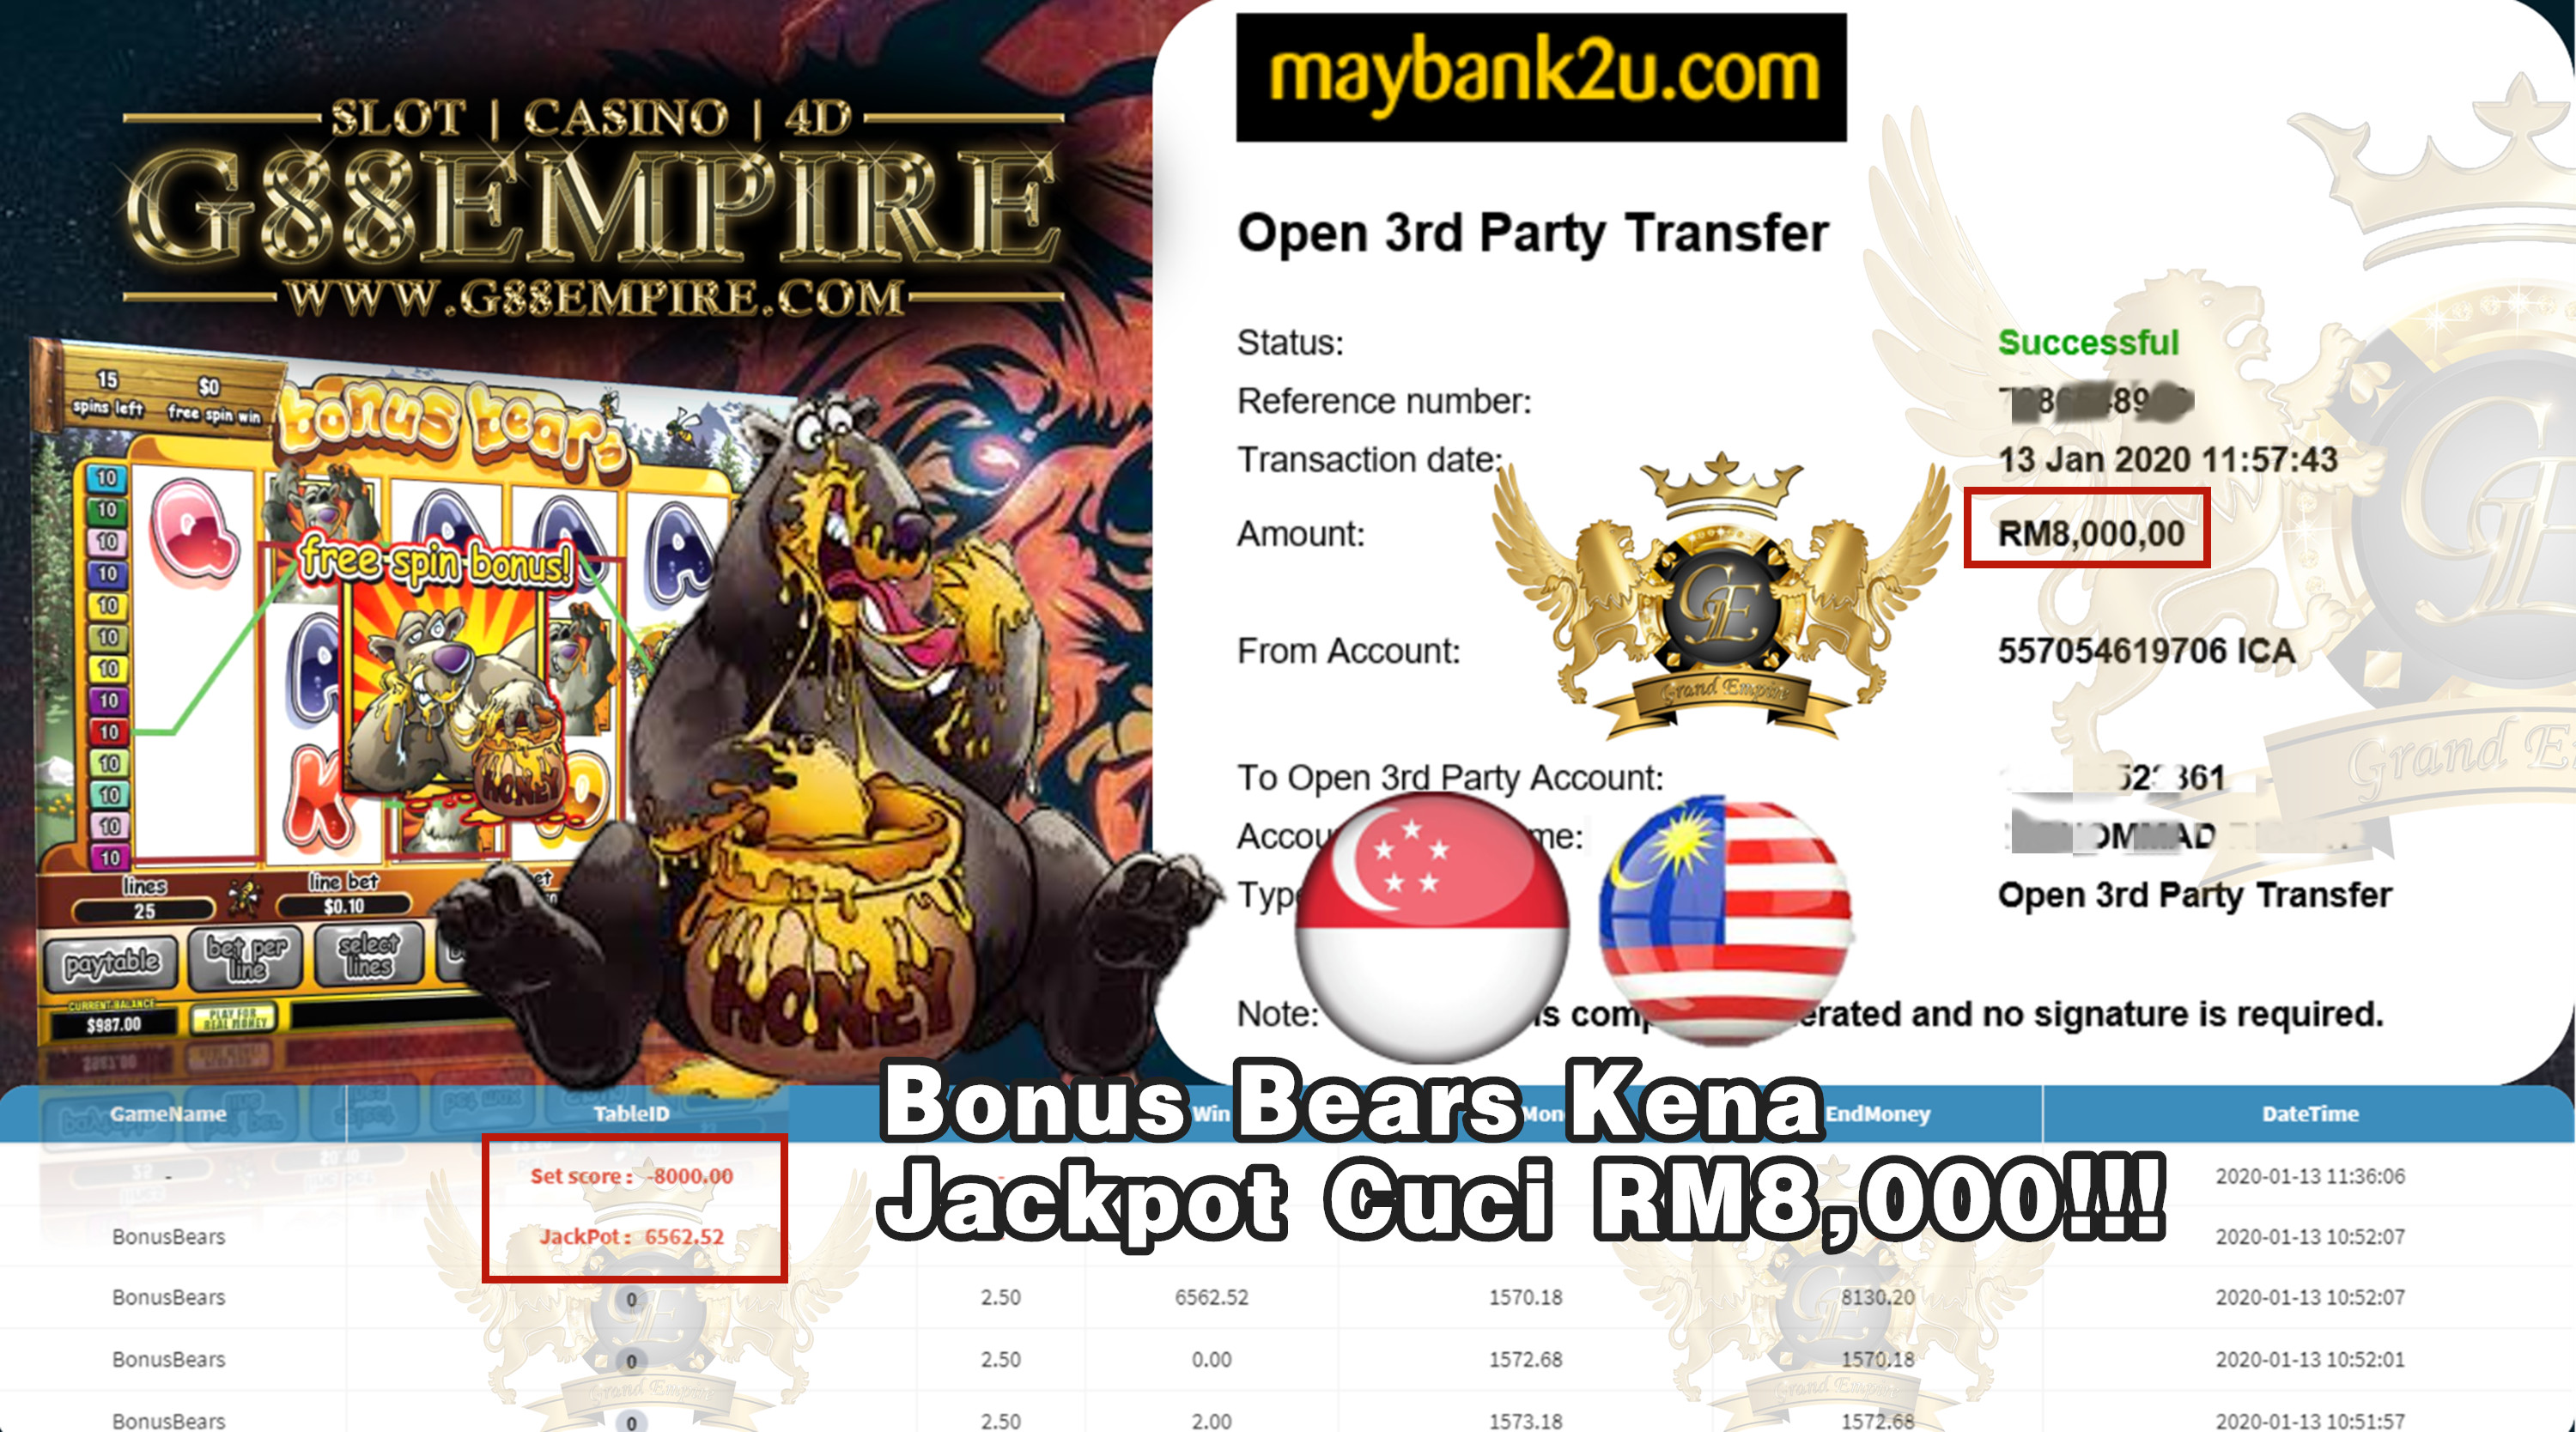 MEMBER MAIN BONUS BEARS CUCI RM8,000!!!